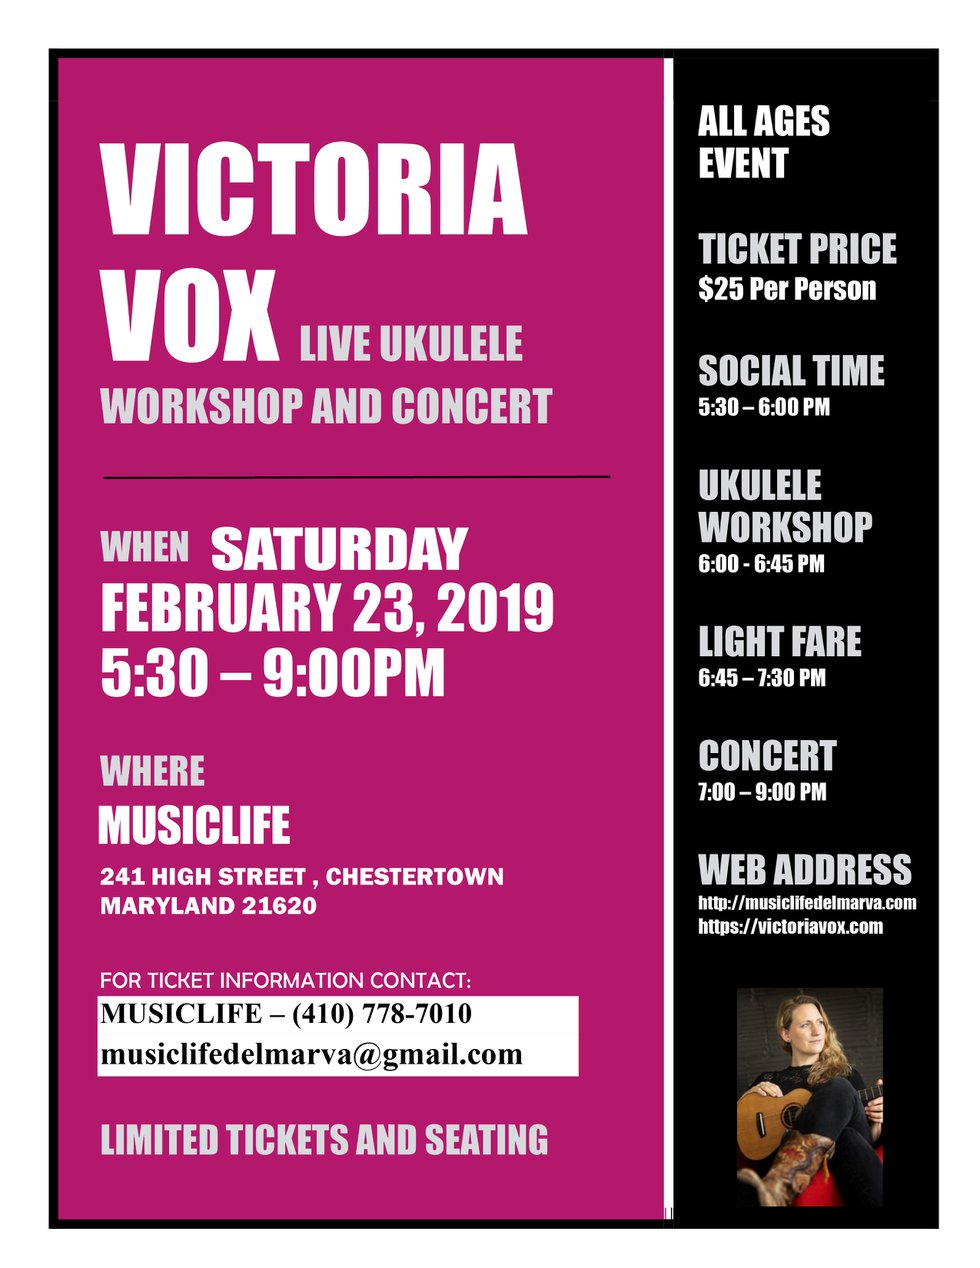 VICTORIA VOX 2019 flyer.jpg